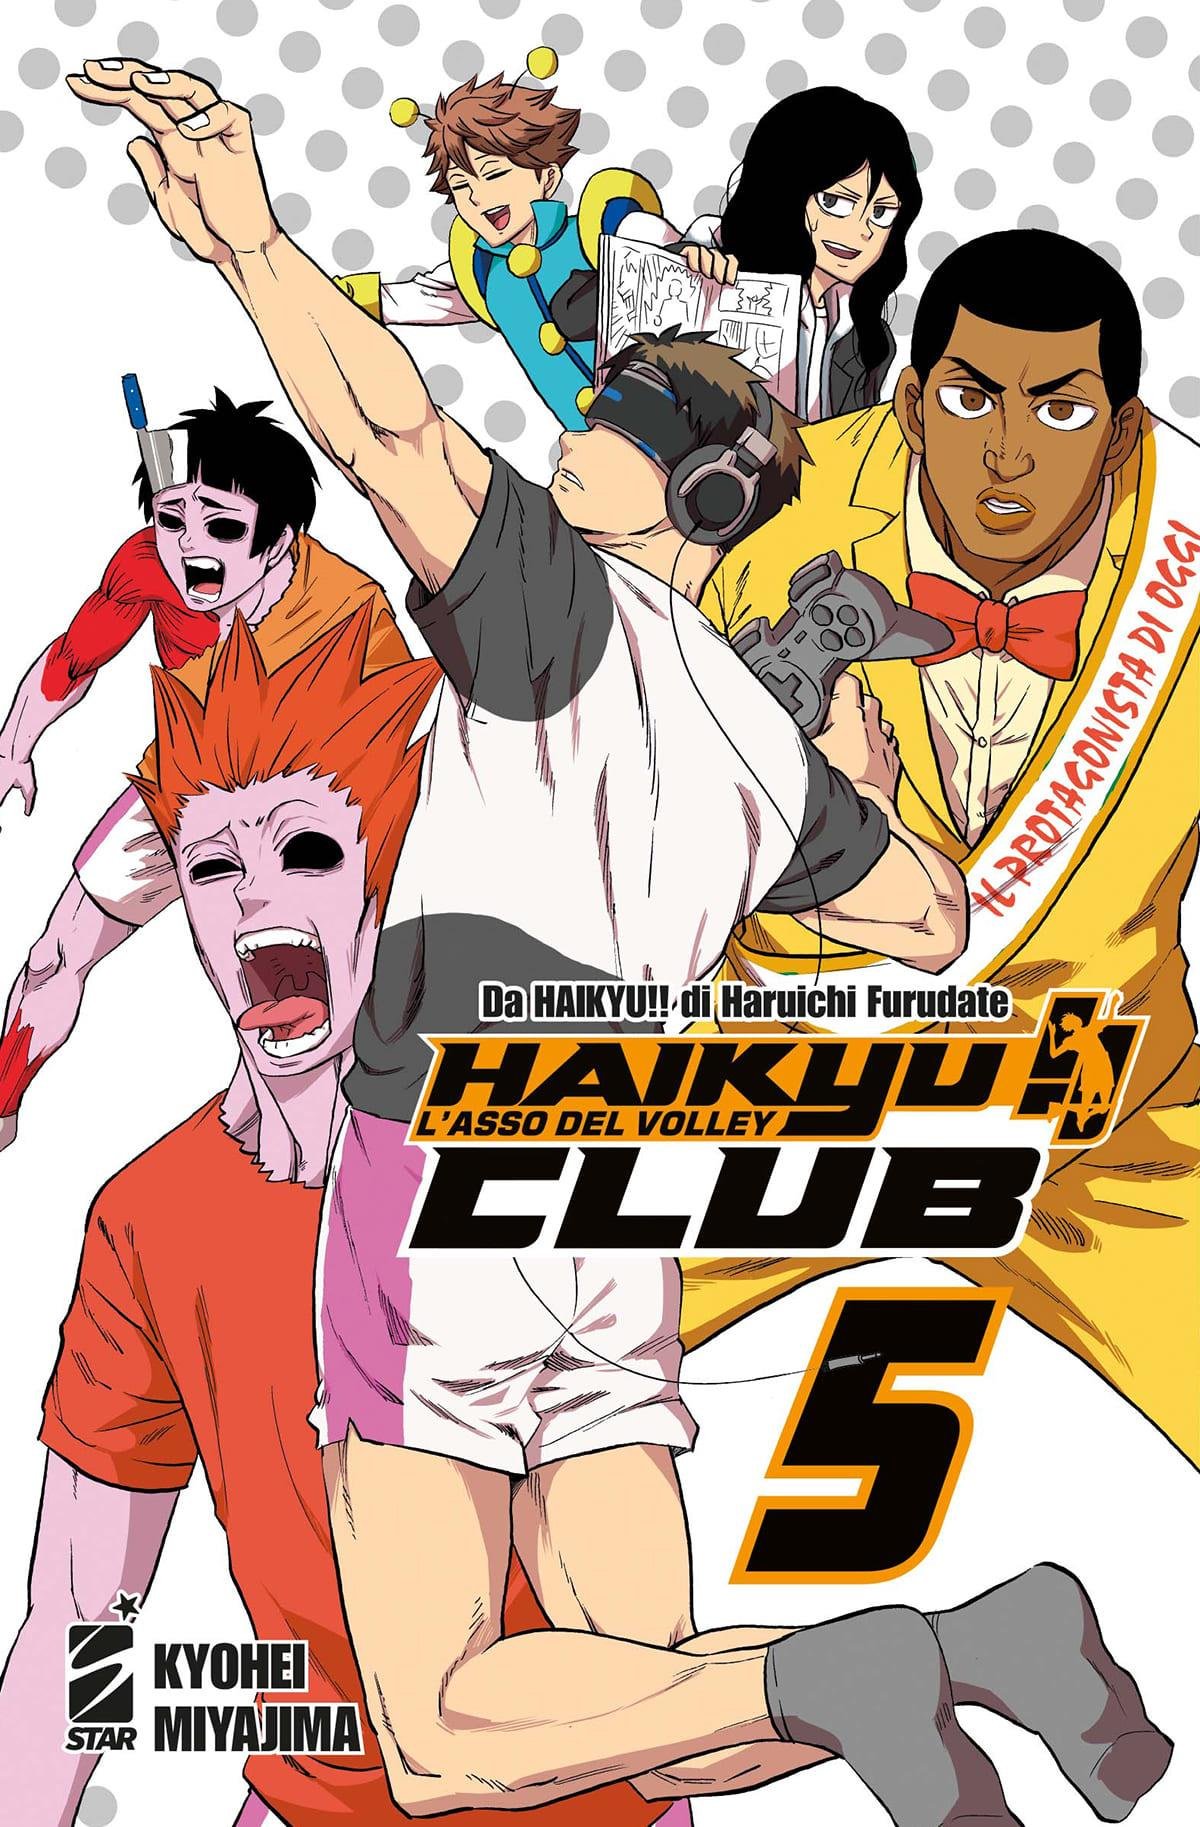 HAIKYU!! CLUB 5